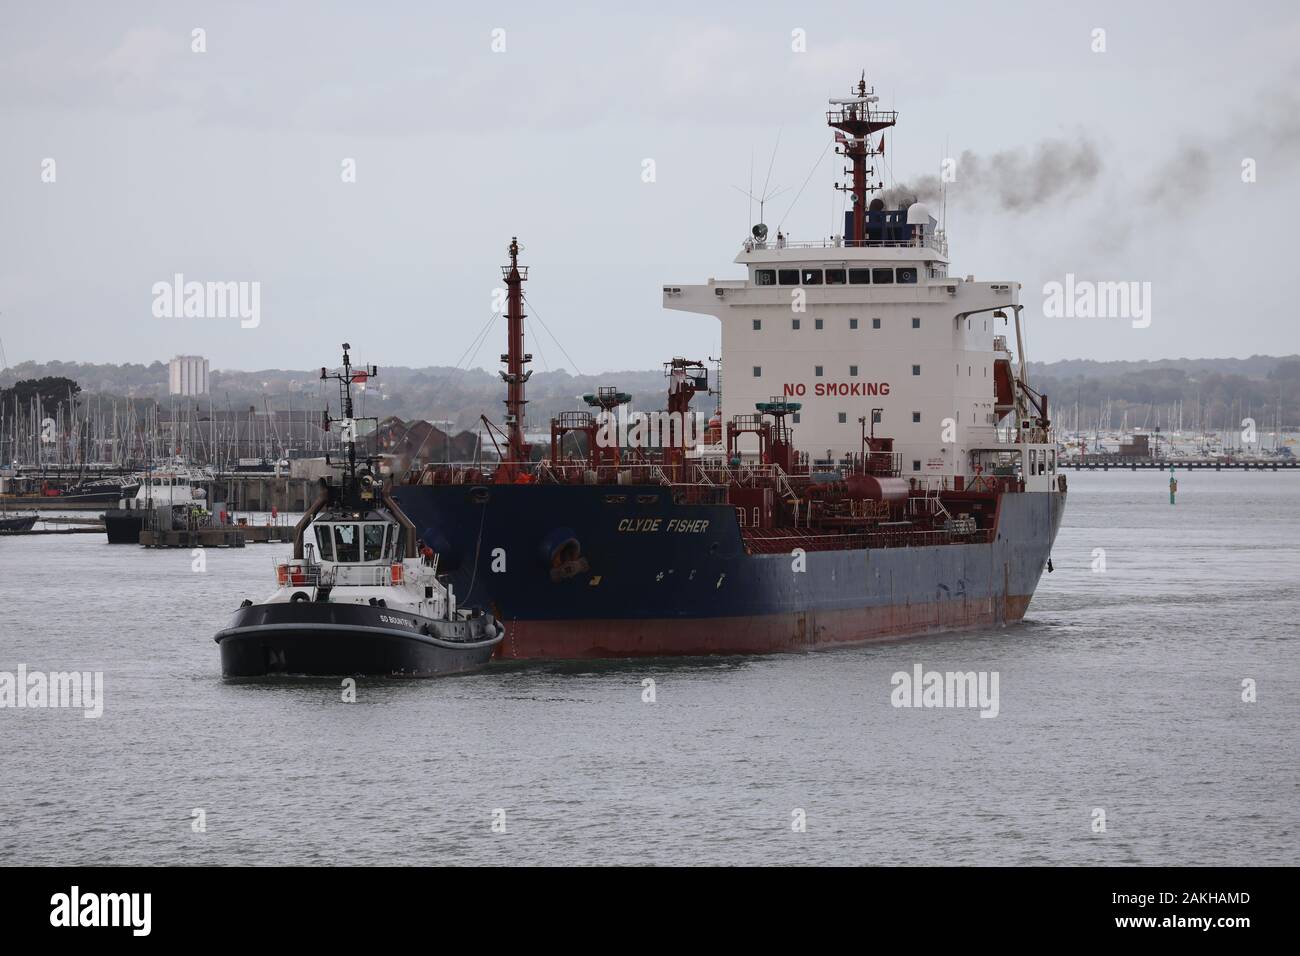 Il rimorchiatore abbondante guida l'olio/chimichiera MV CLYDE FISHER verso la bocca di porto di Portsmouth Foto Stock